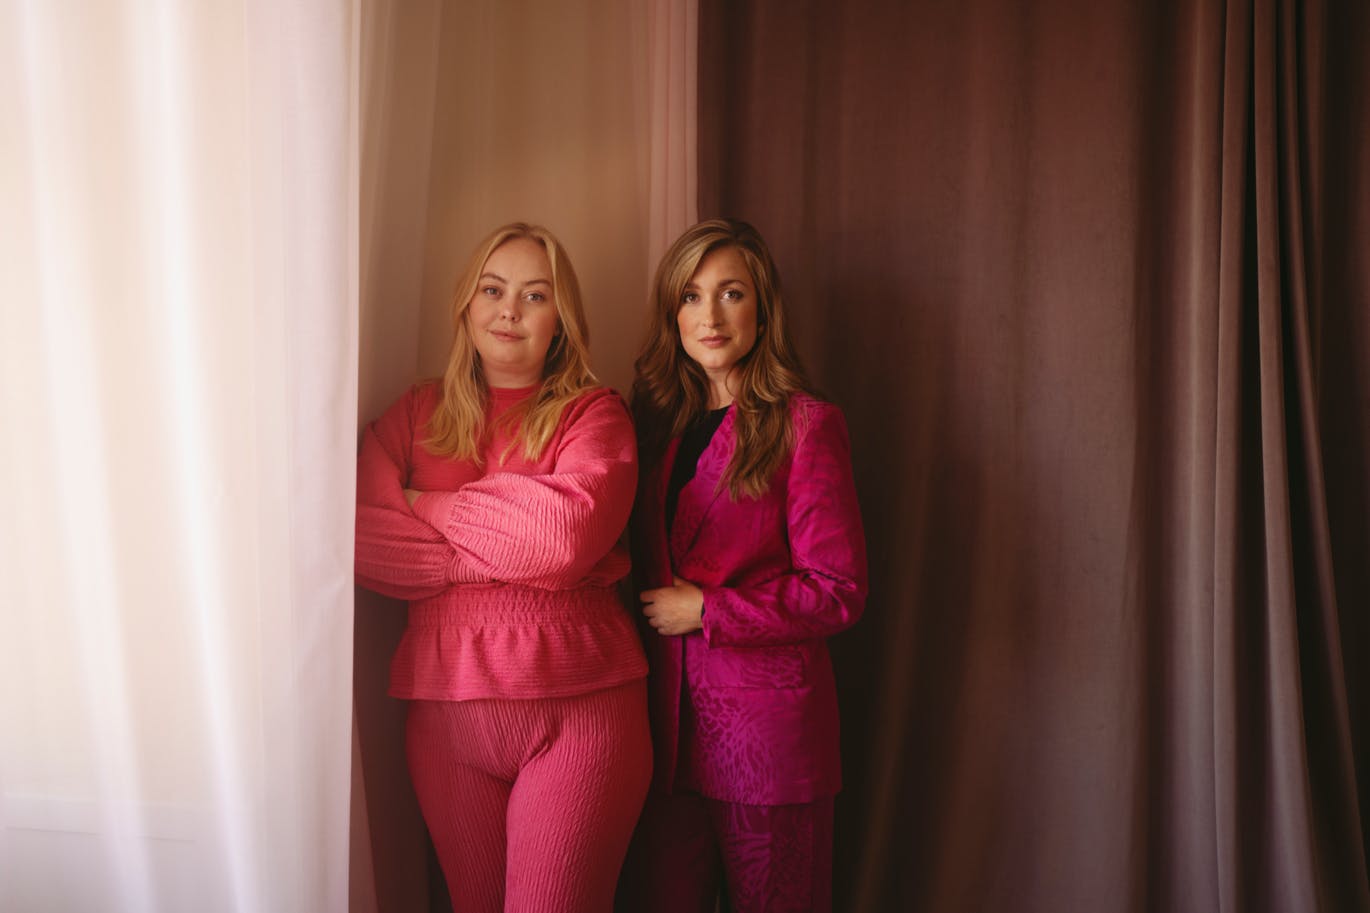 Maria Gudme og Camilla Søe står sammen i et rum med gardiner i lyse farver. Maria Gudme står forest i et rødt sæt tøj, Camilla Søe står bag hende i et pink jakkesæt.